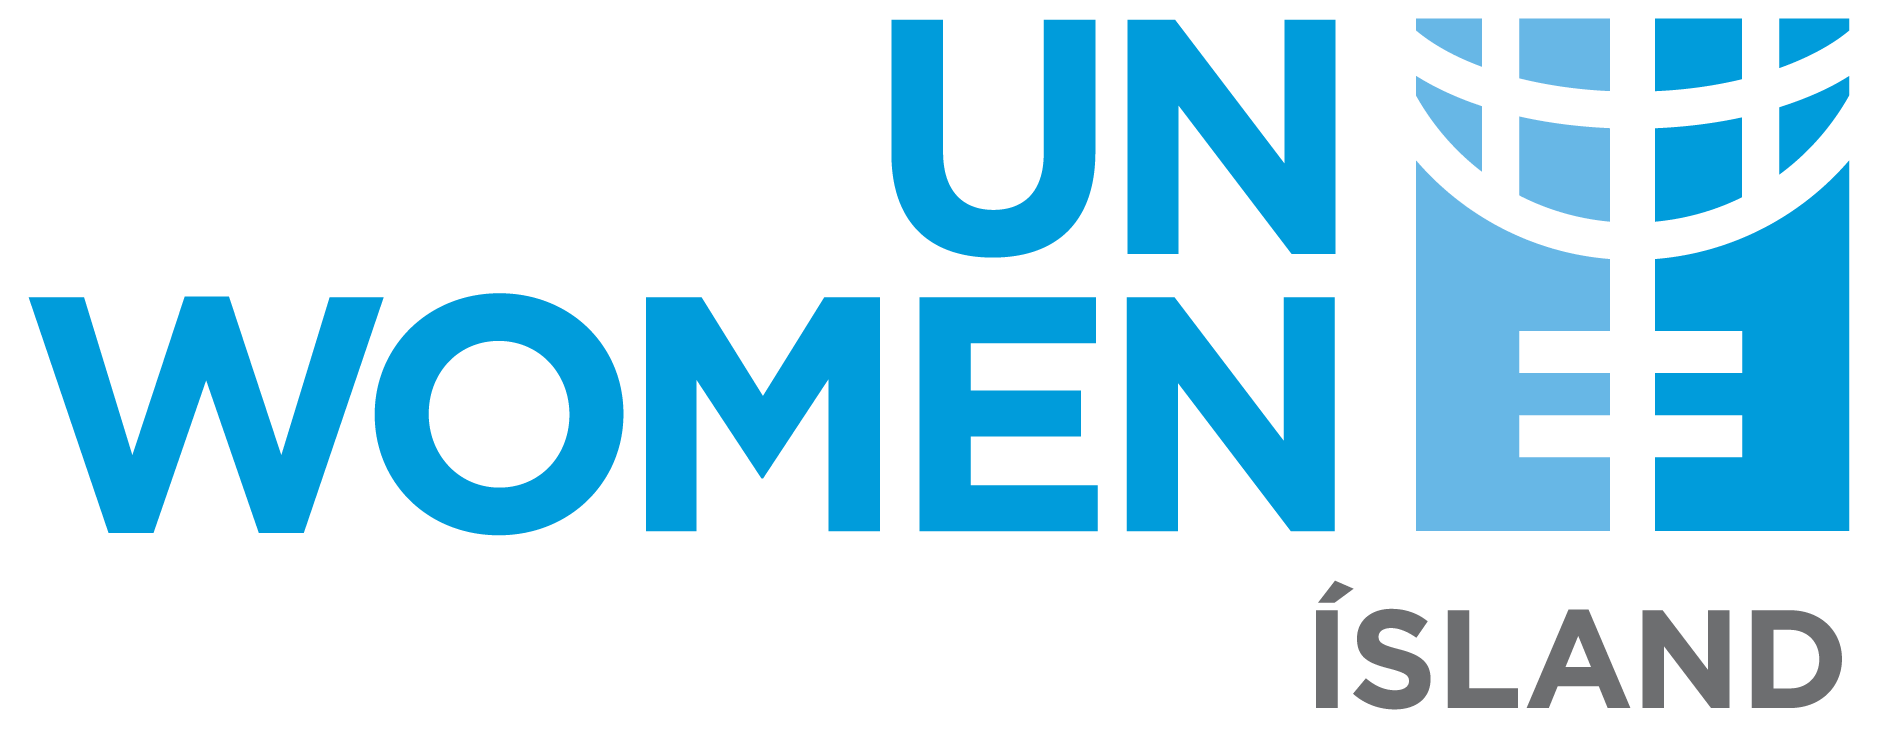 UN Women Ísland